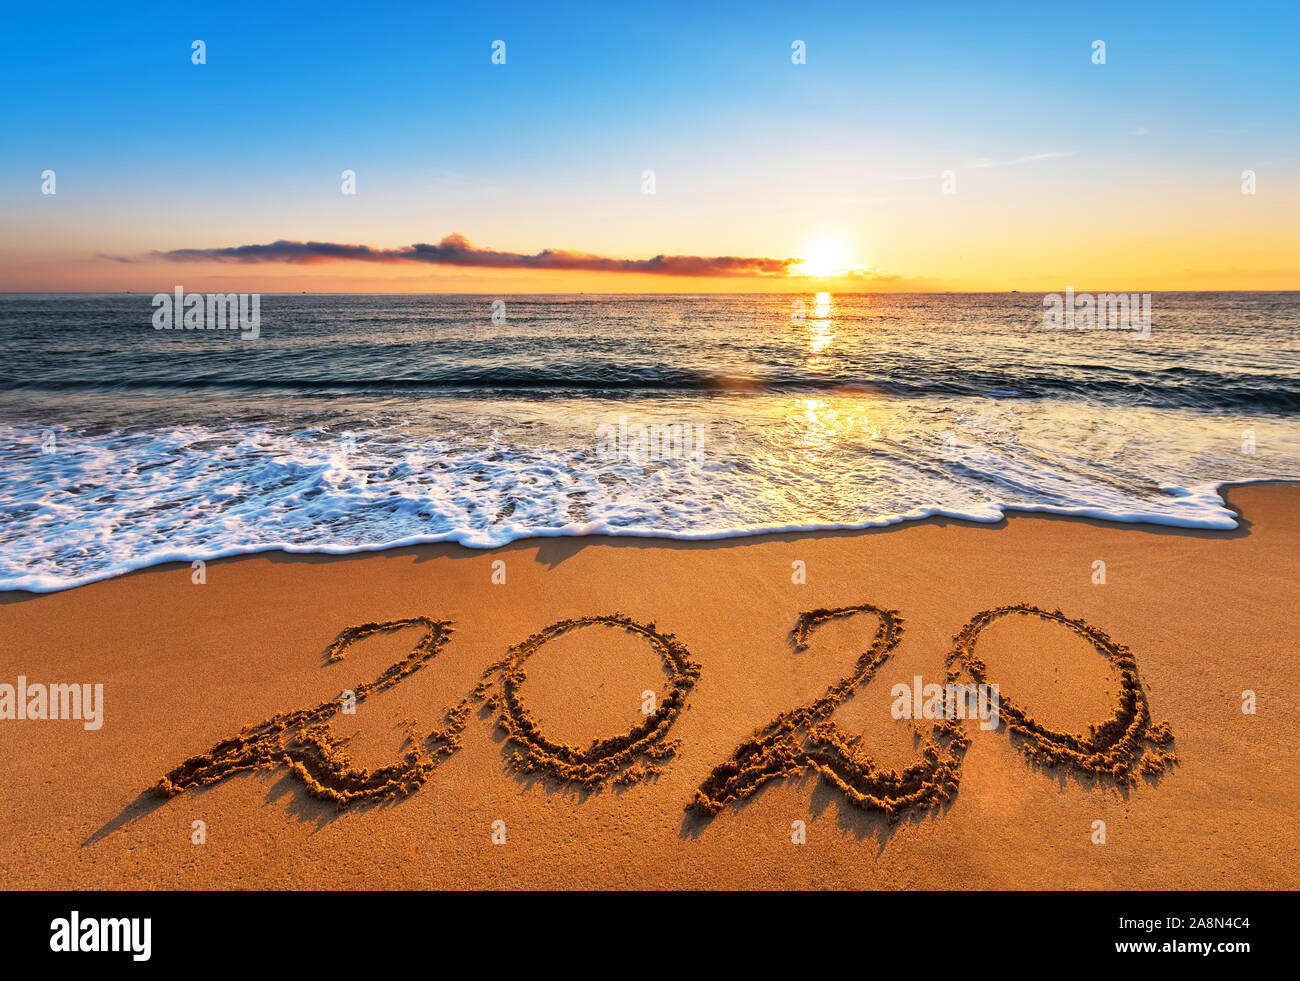 numero-2020-escrito-en-playa-la-arena-al-amanecer-feliz-ano-nuevo-2019-concepto-2a8n4c4.jpg